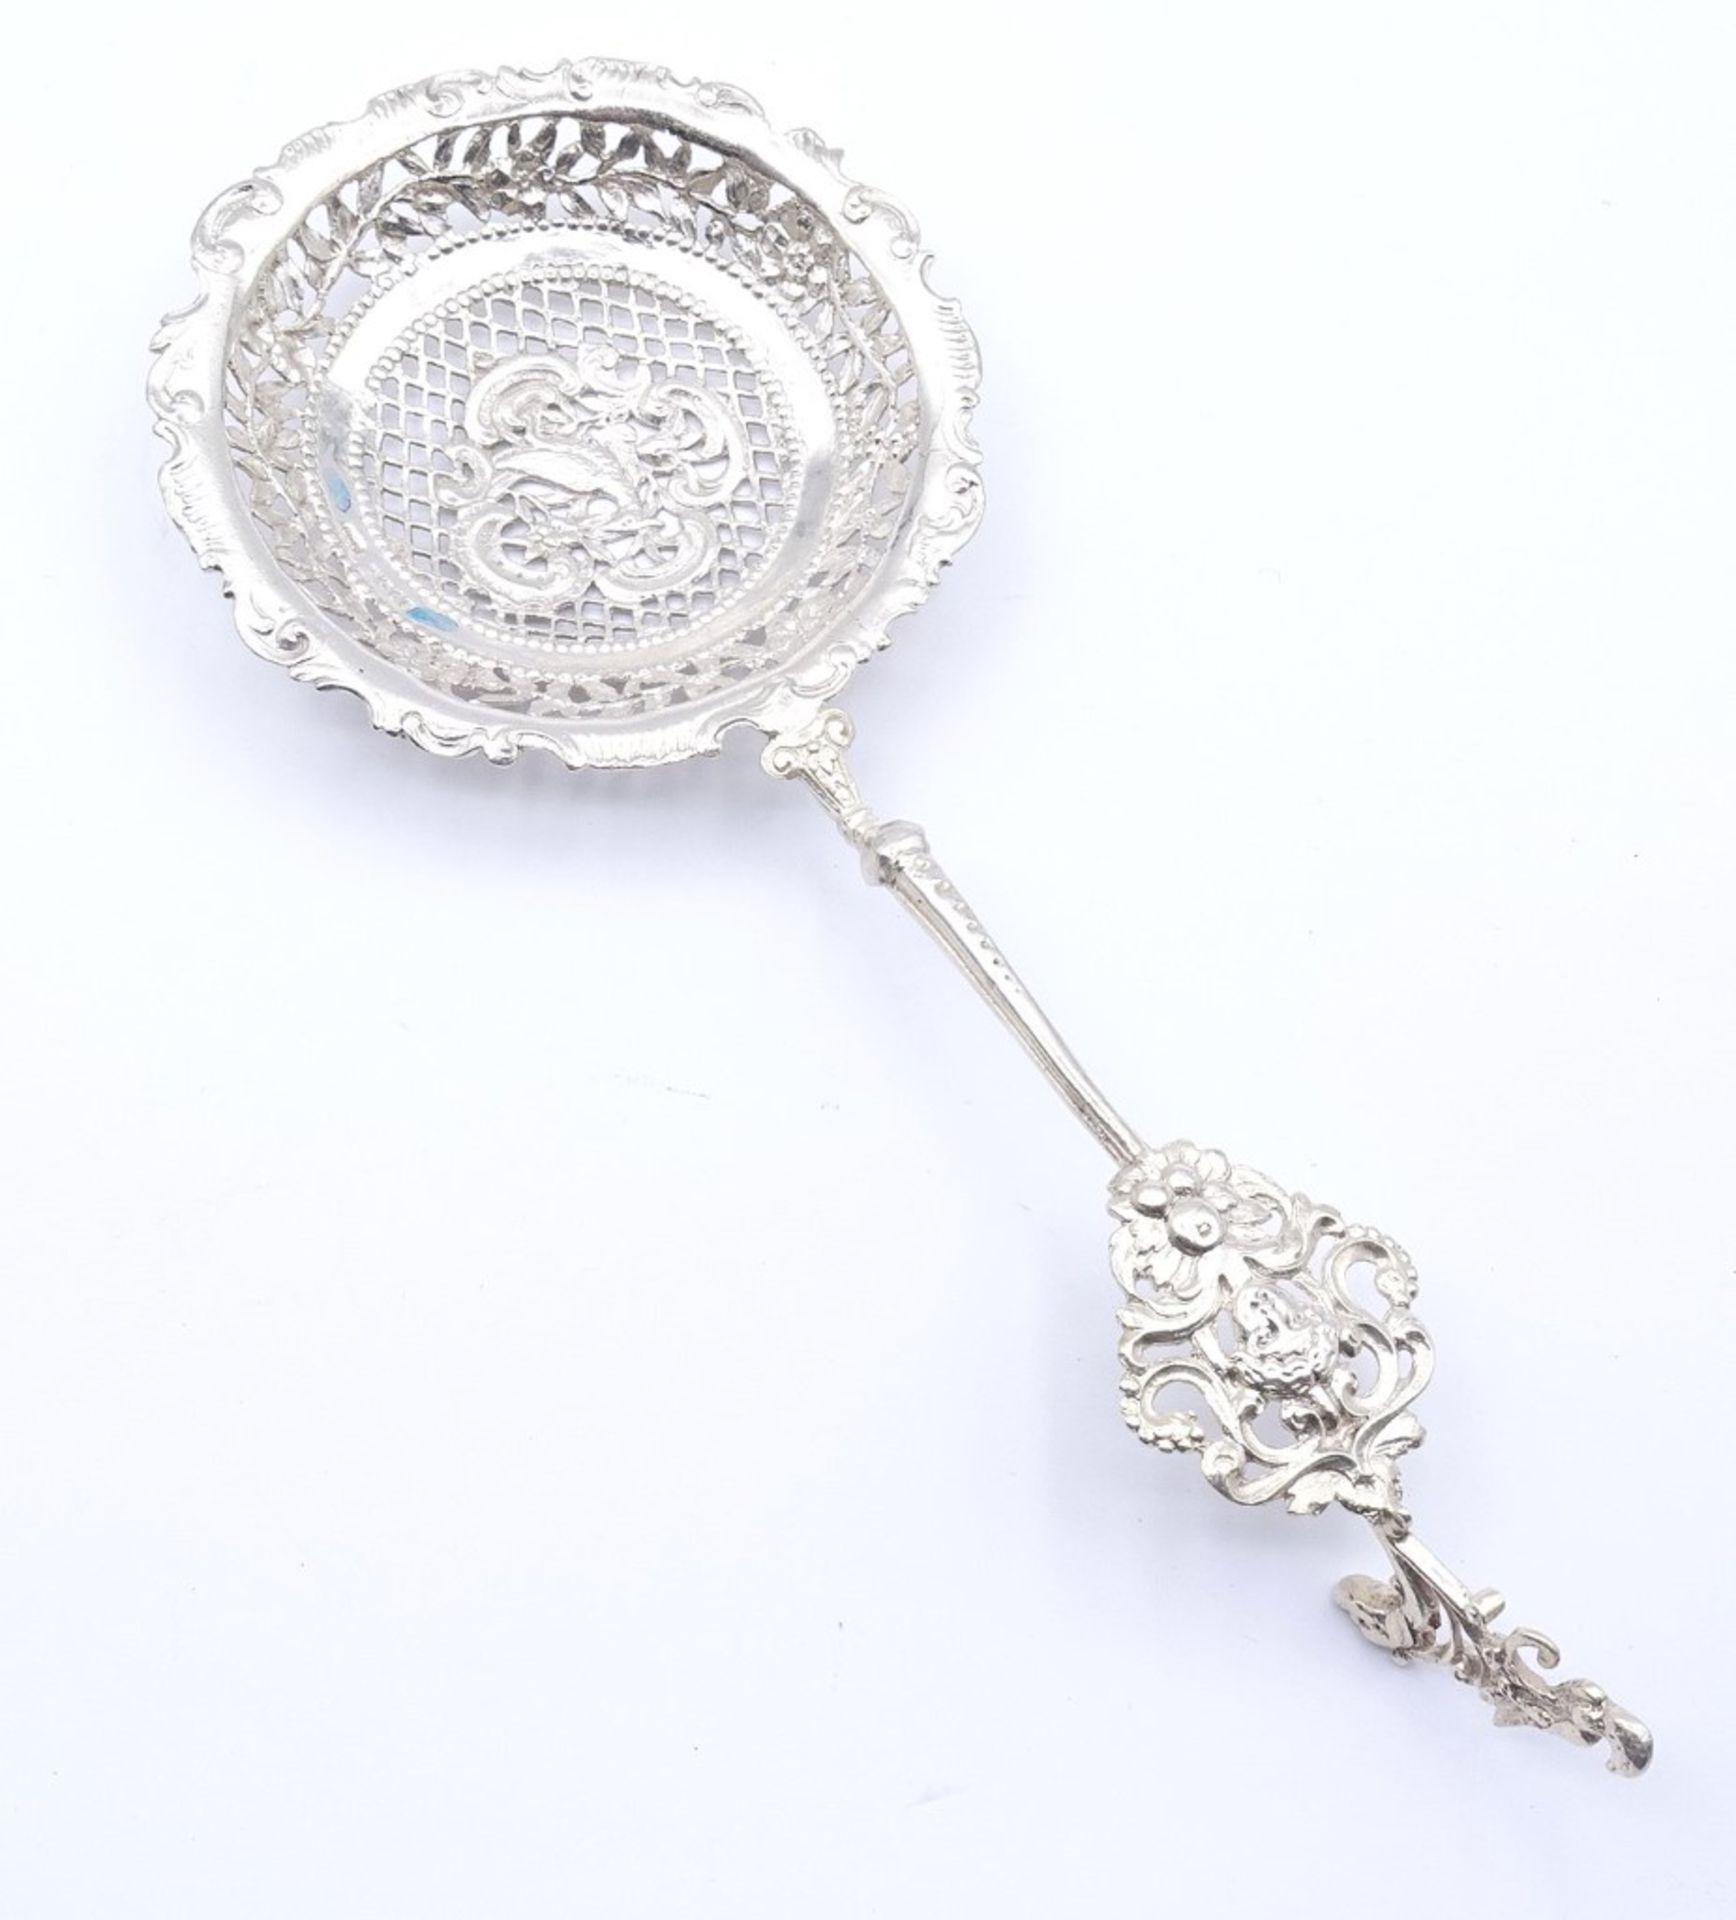 Großes Teesieb,England,Silber, mit durchbrochene Laffe,mit Putto Kopf am Griff,Silber 930/000,L- - Image 2 of 10